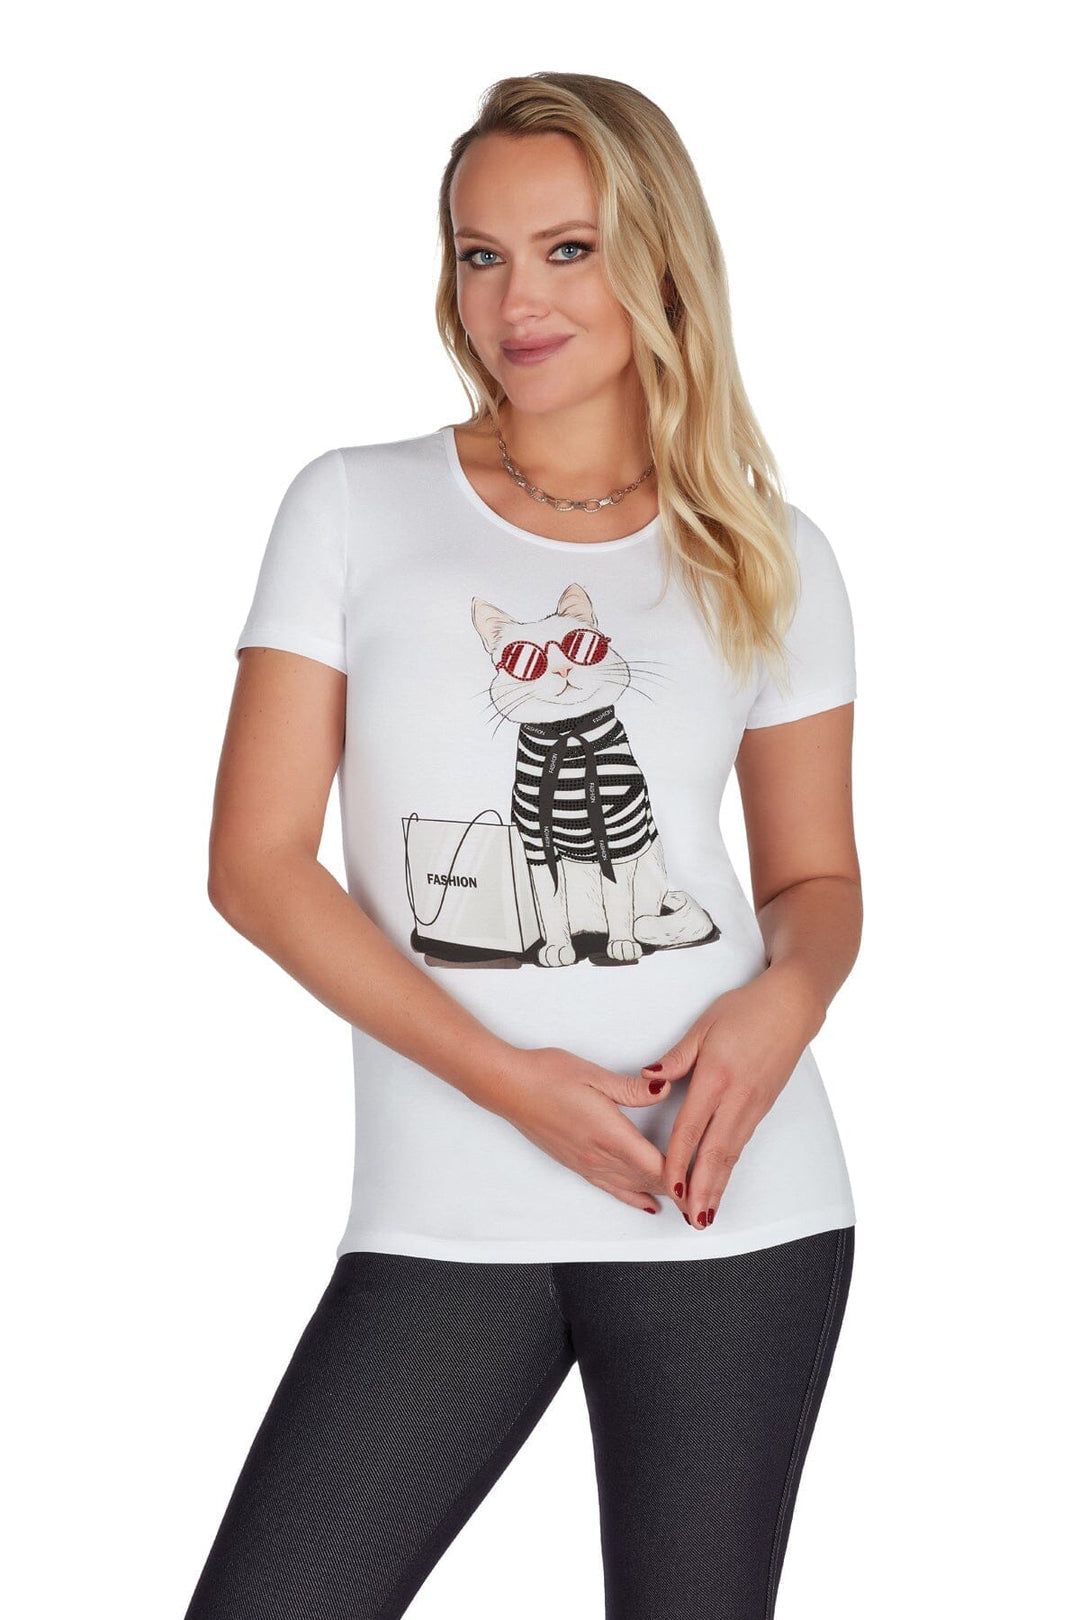 T-shirt chat stylisé Femme - Hauts - T-shirt Tricotto